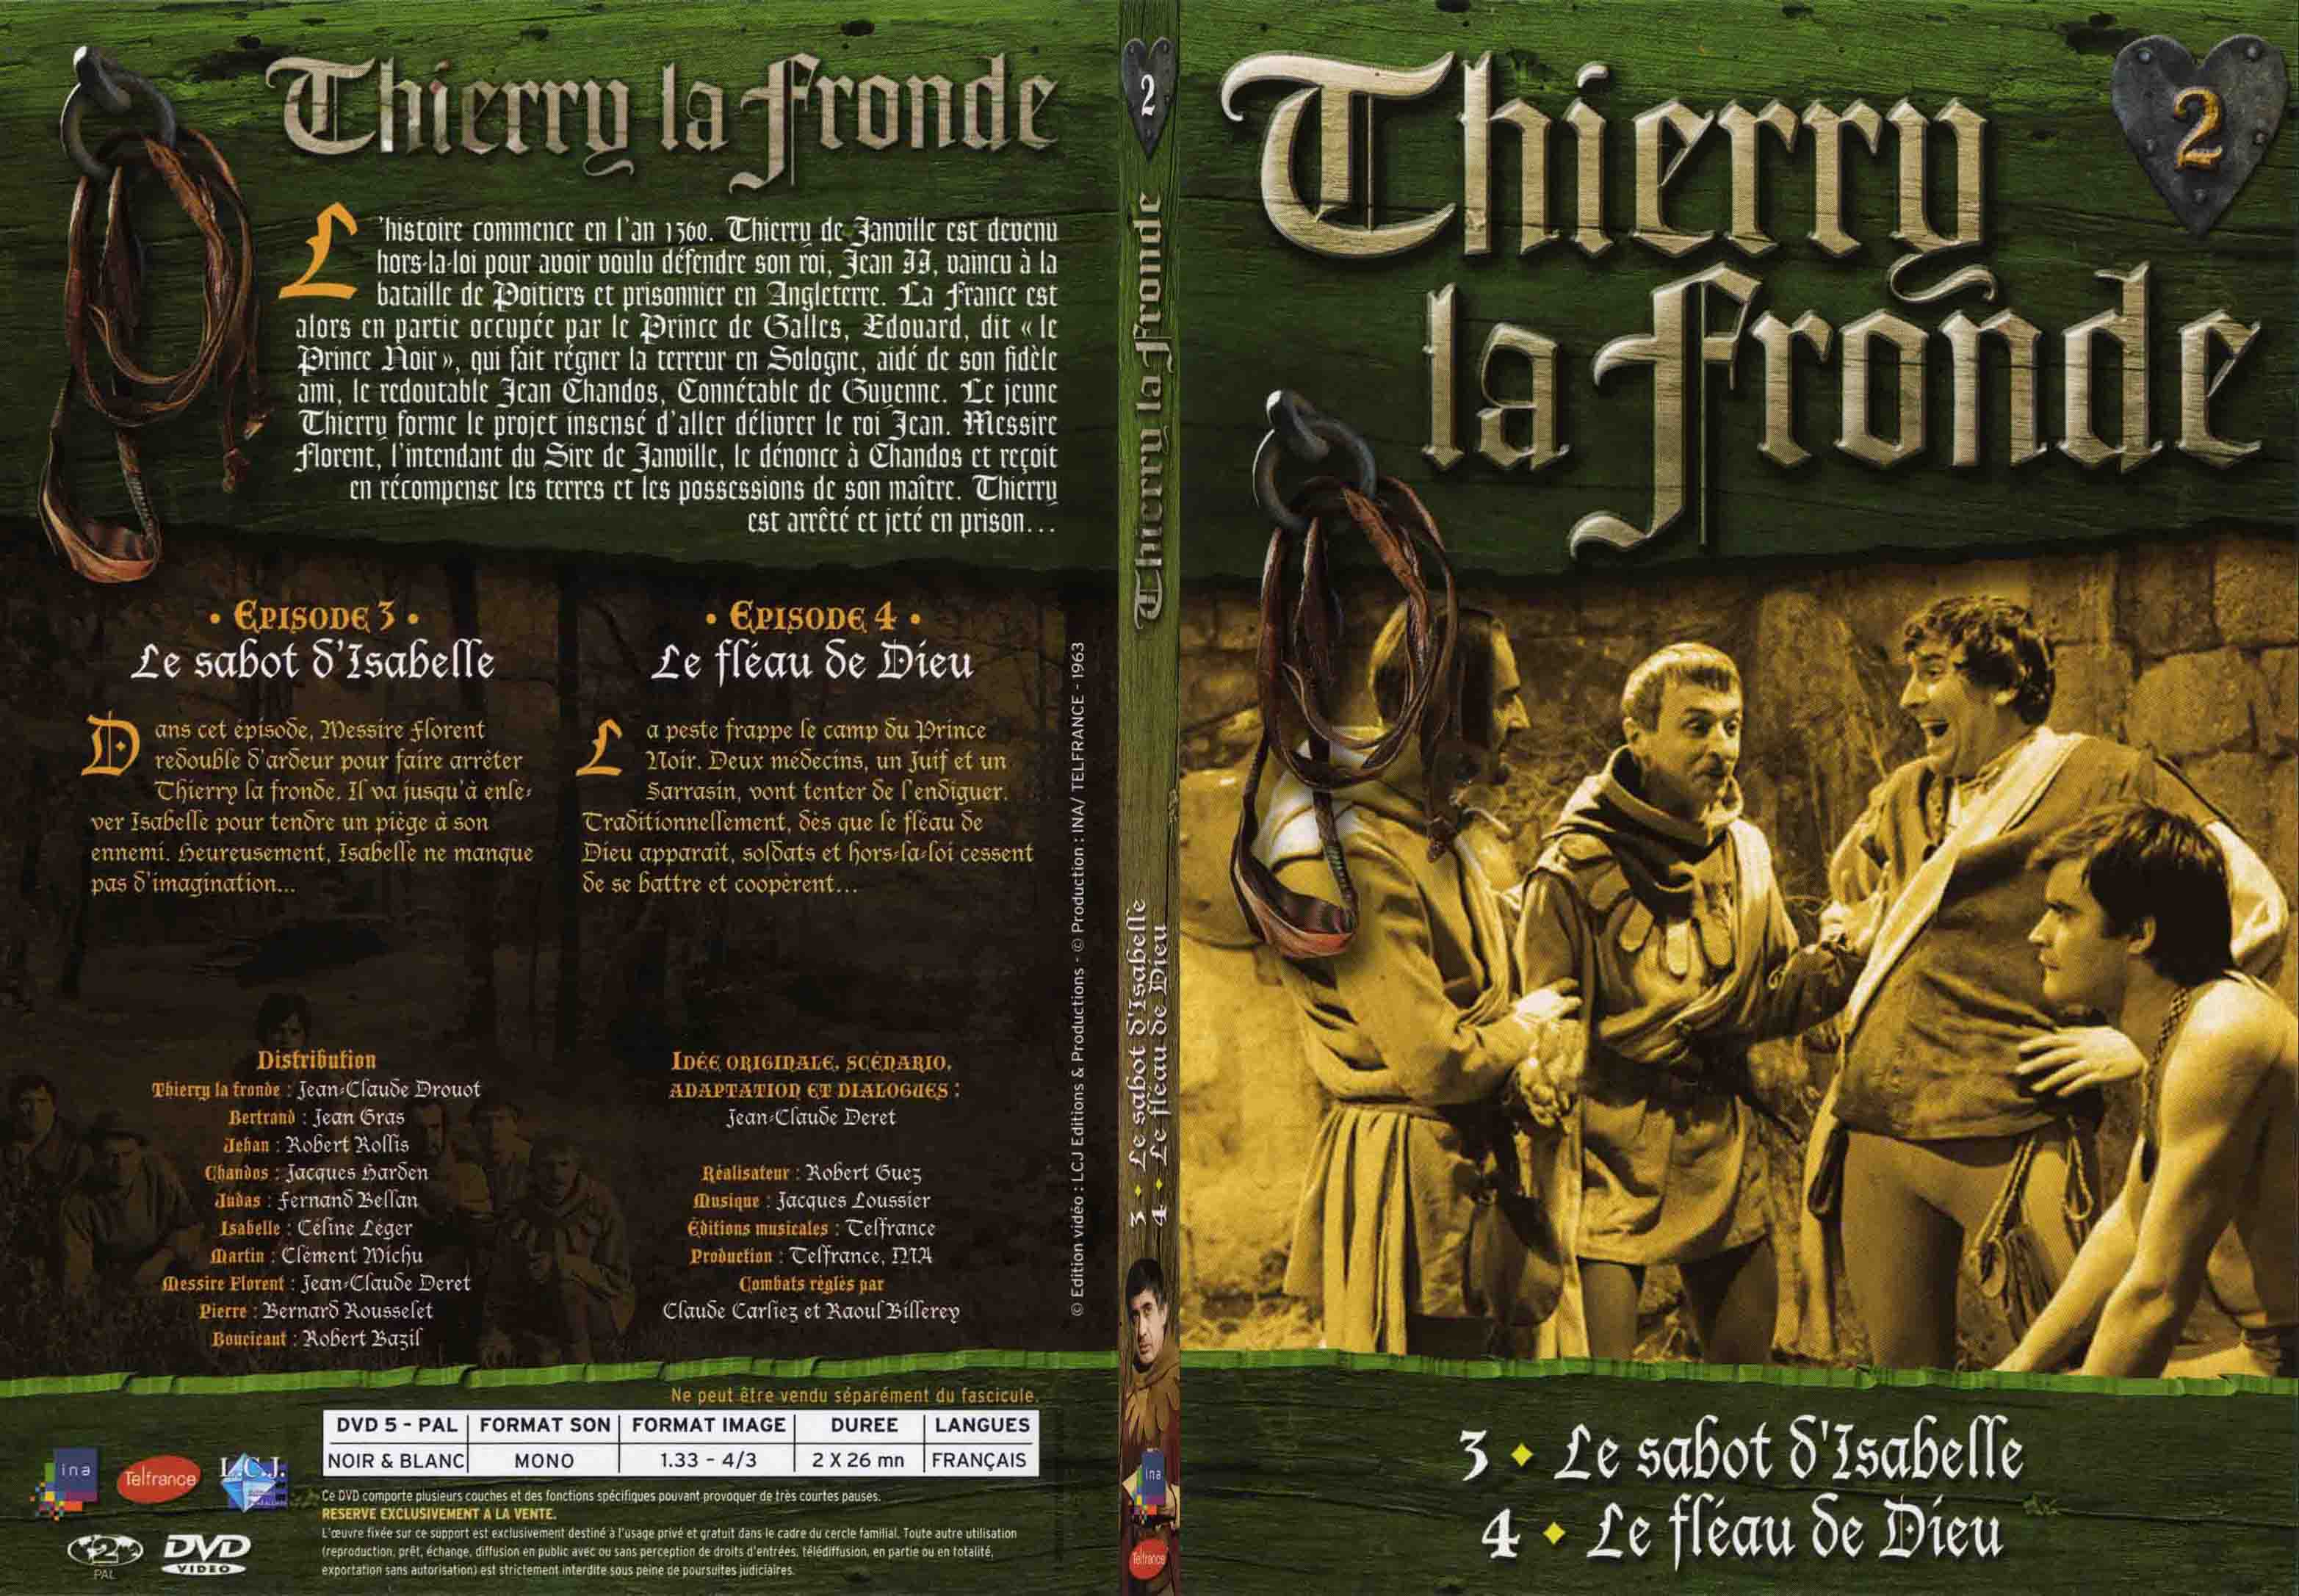 Jaquette DVD Thierry la Fronde vol 02 - SLIM